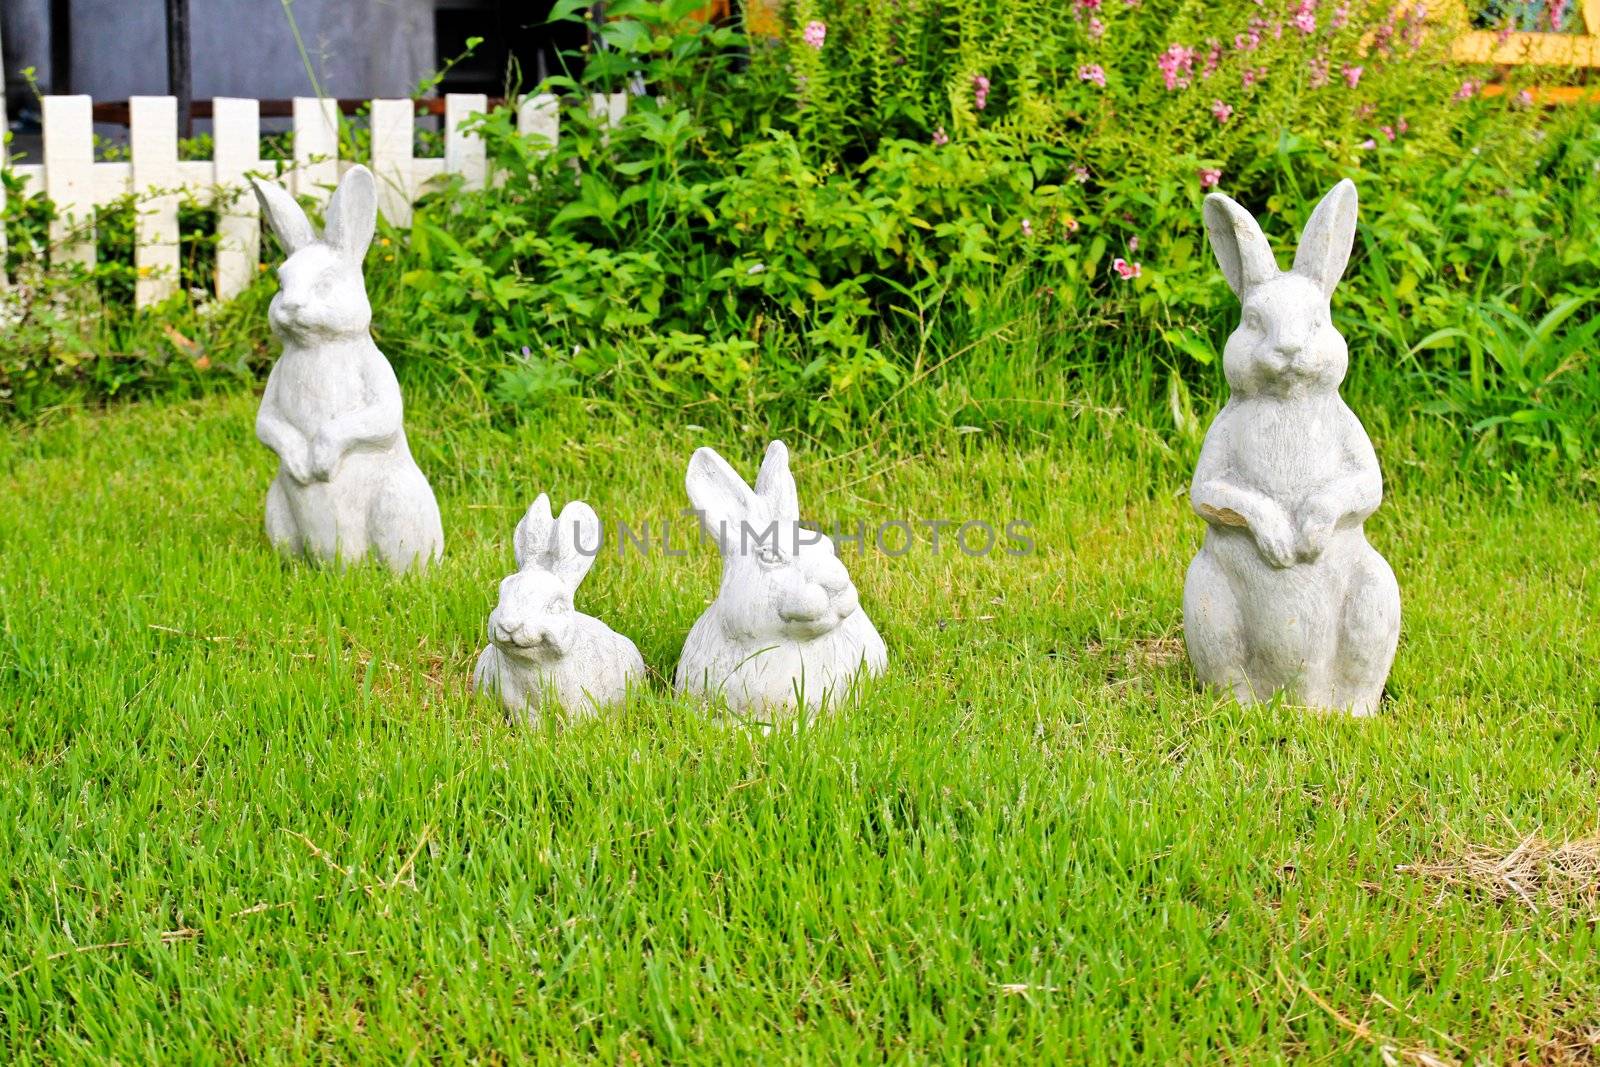 Statue of rabbit by nuchylee